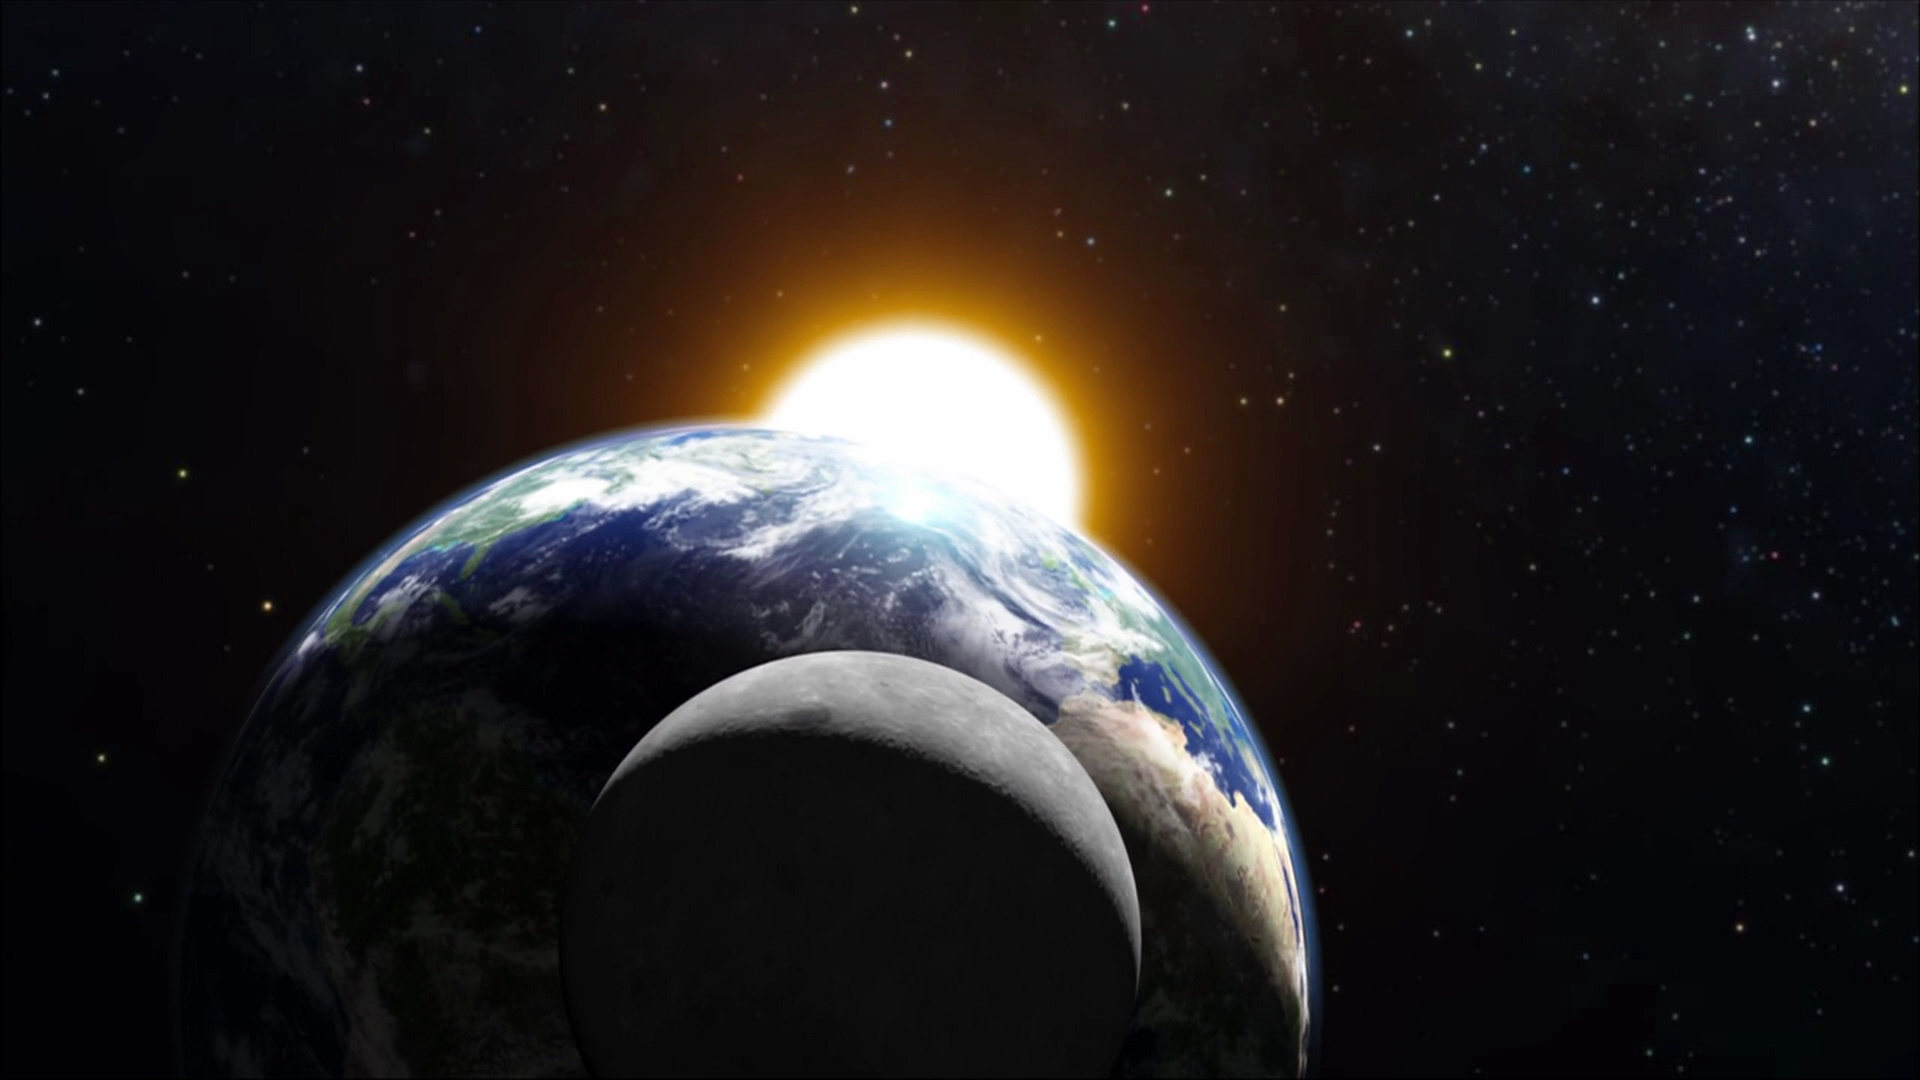 Η Σελήνη περιέχει την ίδια ποσότητα νερού με την Γη